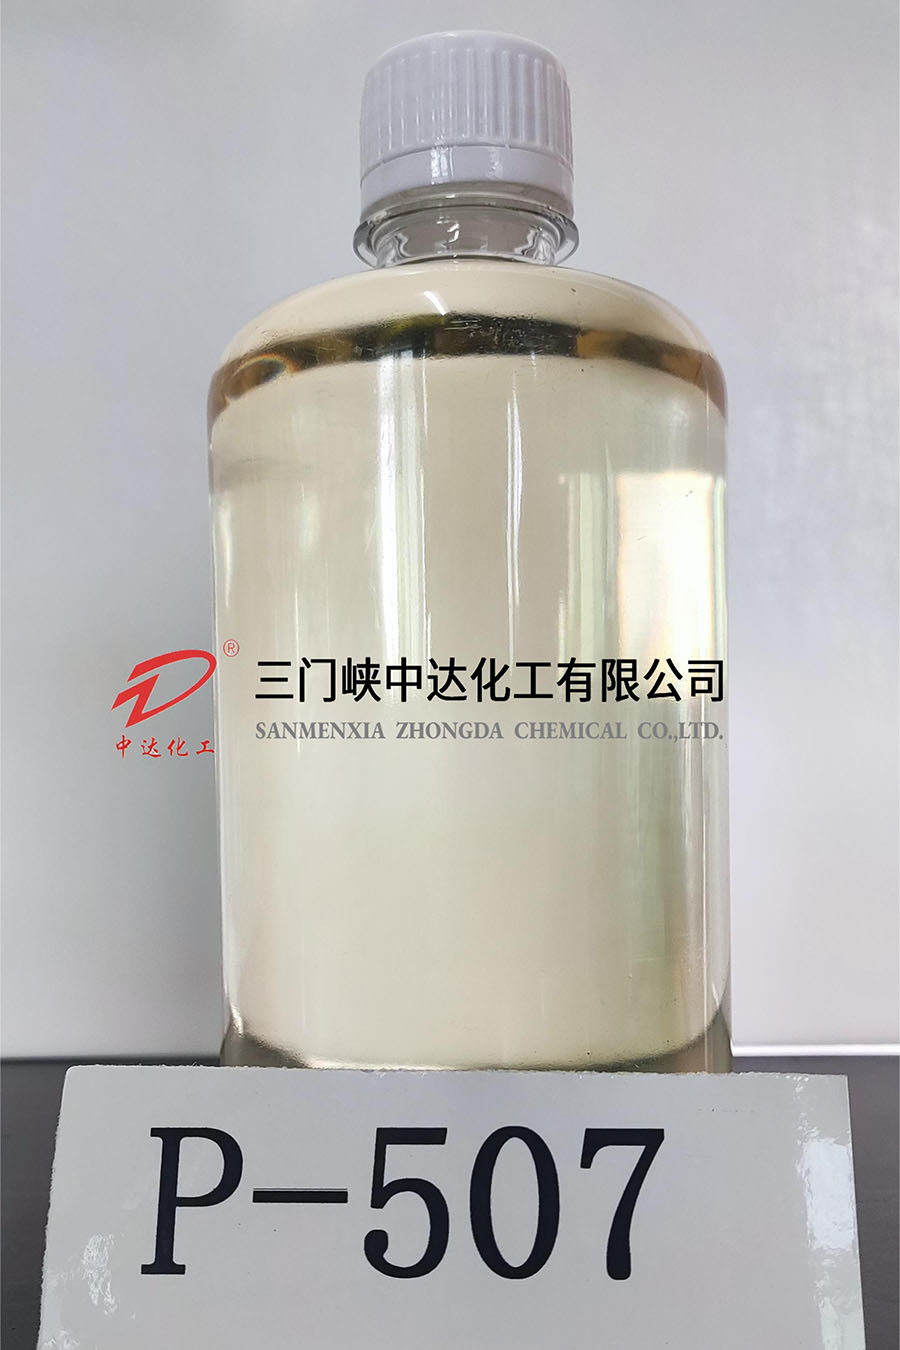 2-ethylhexyl phosphate 2-ethylhexyl (P-507)